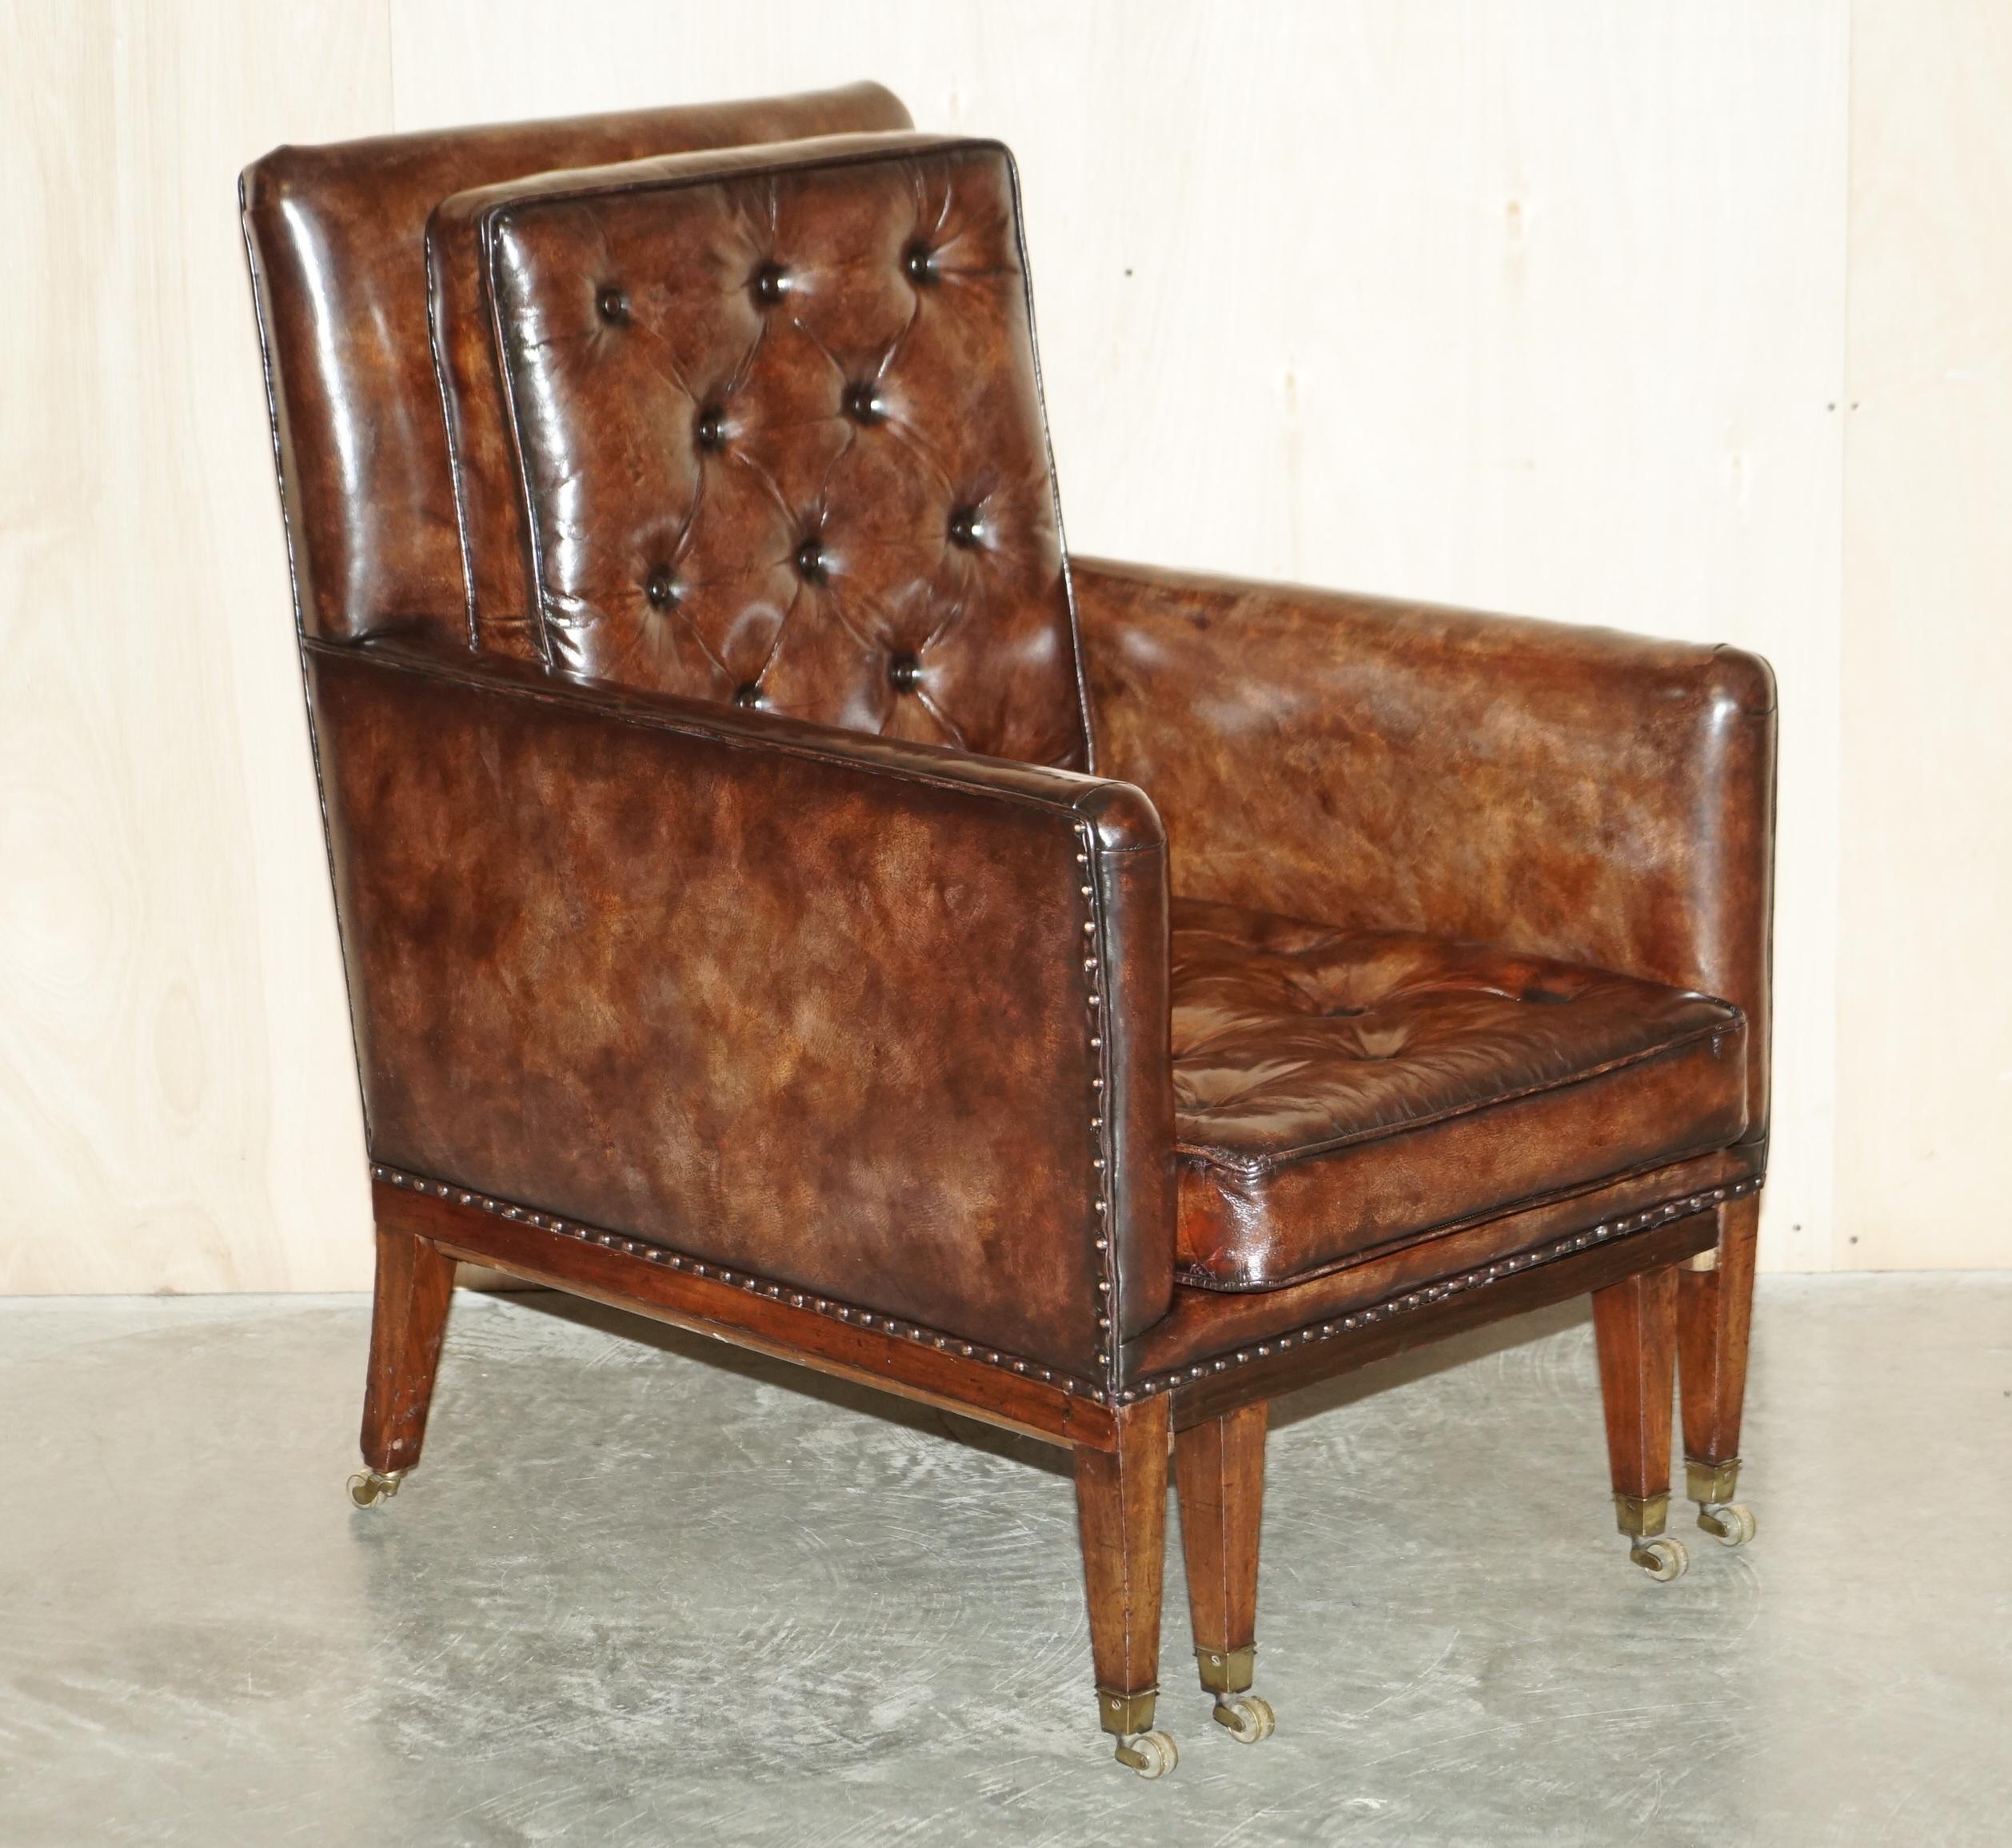 Nous sommes ravis d'offrir à la vente cette belle paire de fauteuils Chesterfield en cuir brun teint à la main, datant d'environ 1810-1820, entièrement restaurés, avec poufs cachés

Ces chaises ont été entièrement restaurées : le cuir a été décapé